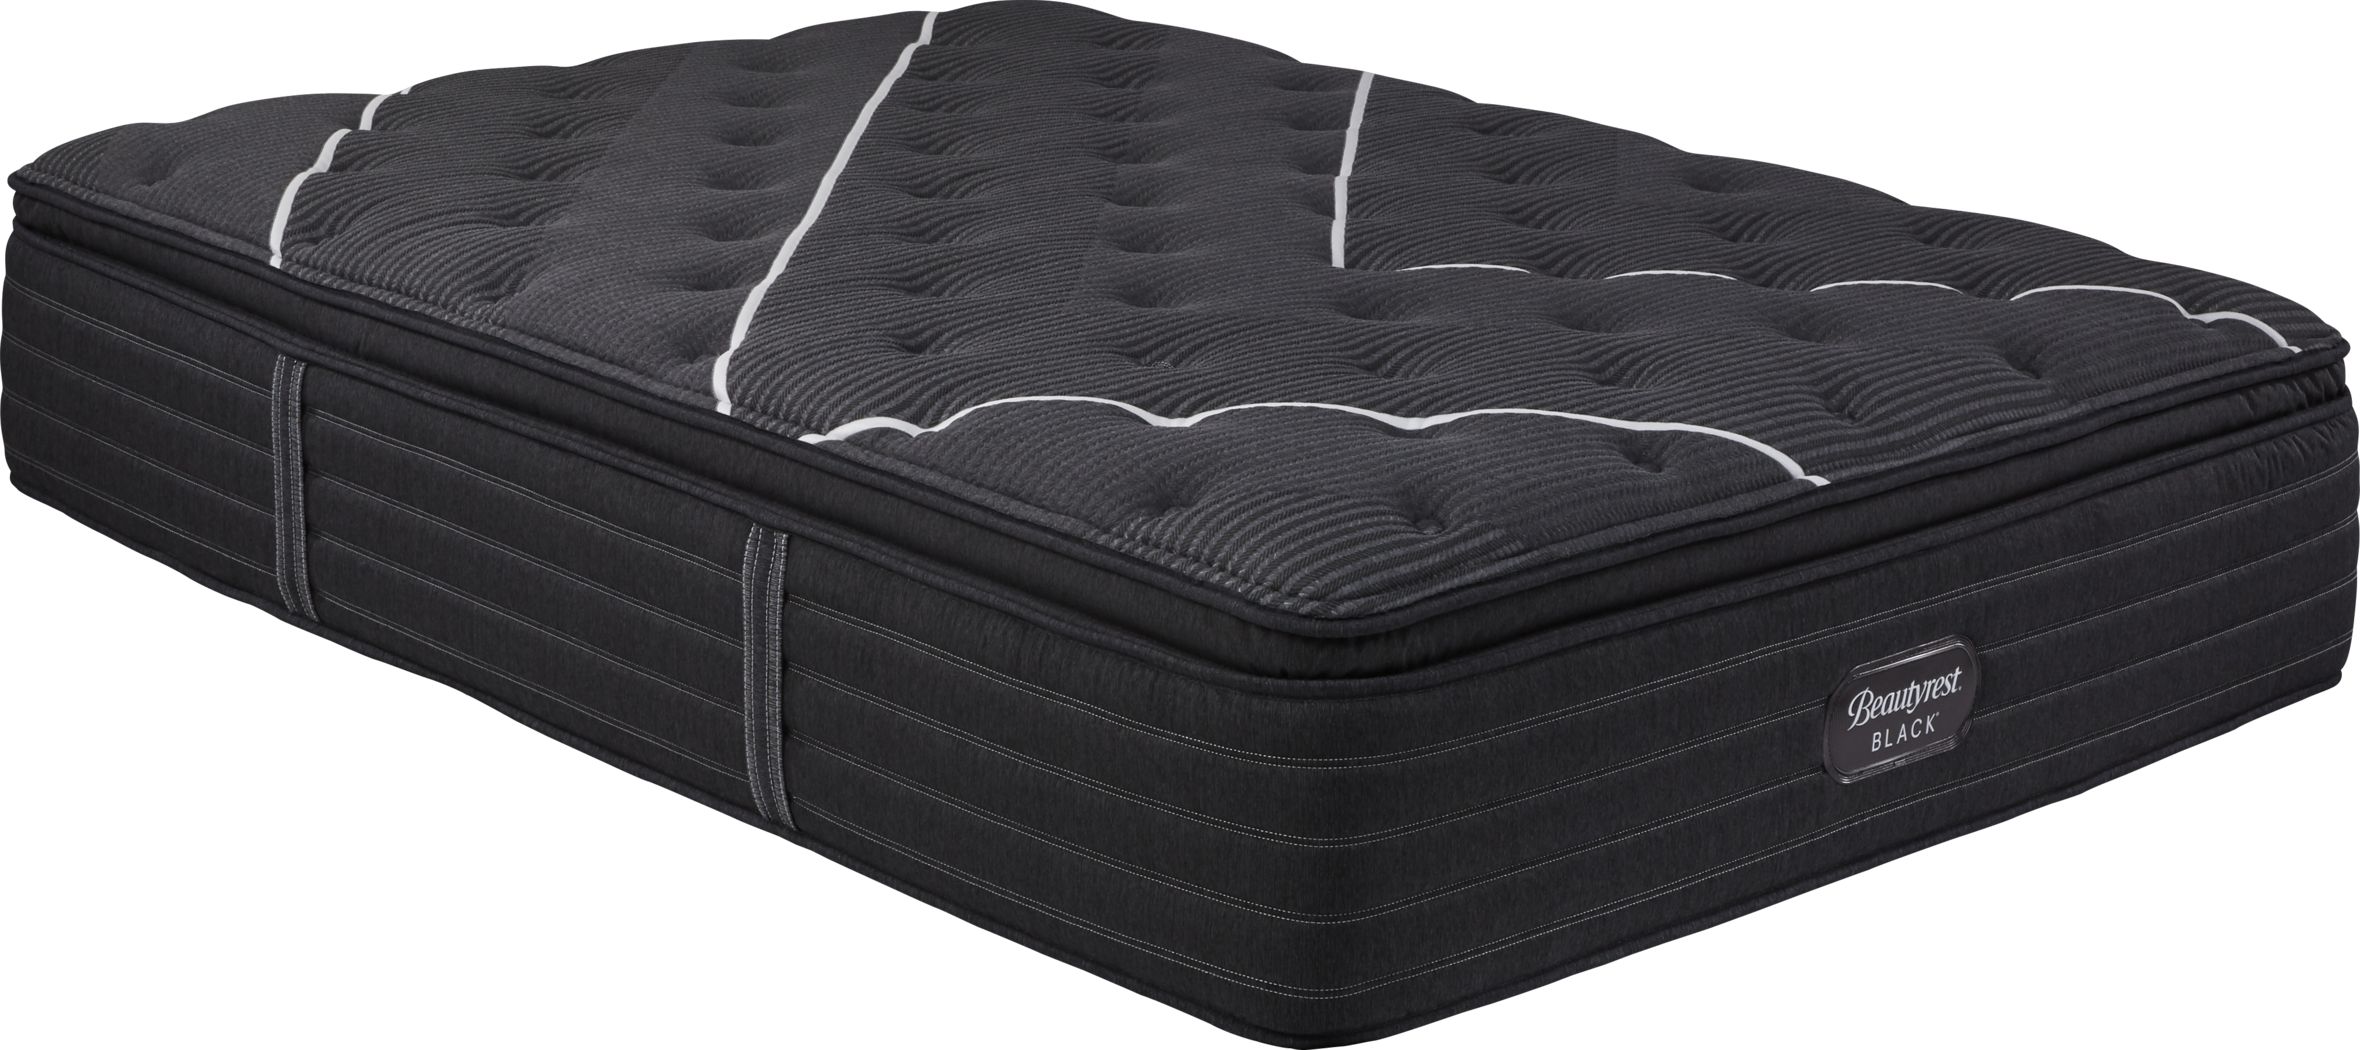 beauty rest dana point pillow pillowtop king mattress